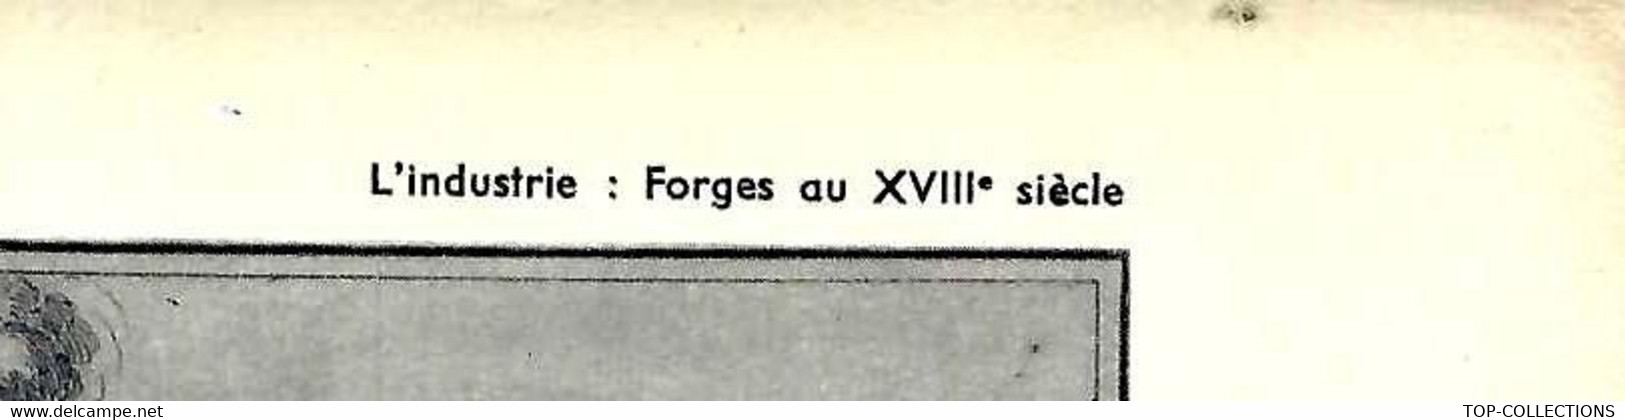 INDUSTRIE DES FORGES AU XVIII° SIECLE OUTIL PEDAGOGIQUE HACHETTE 1954  B.E.V.SCANS - Sammlungen